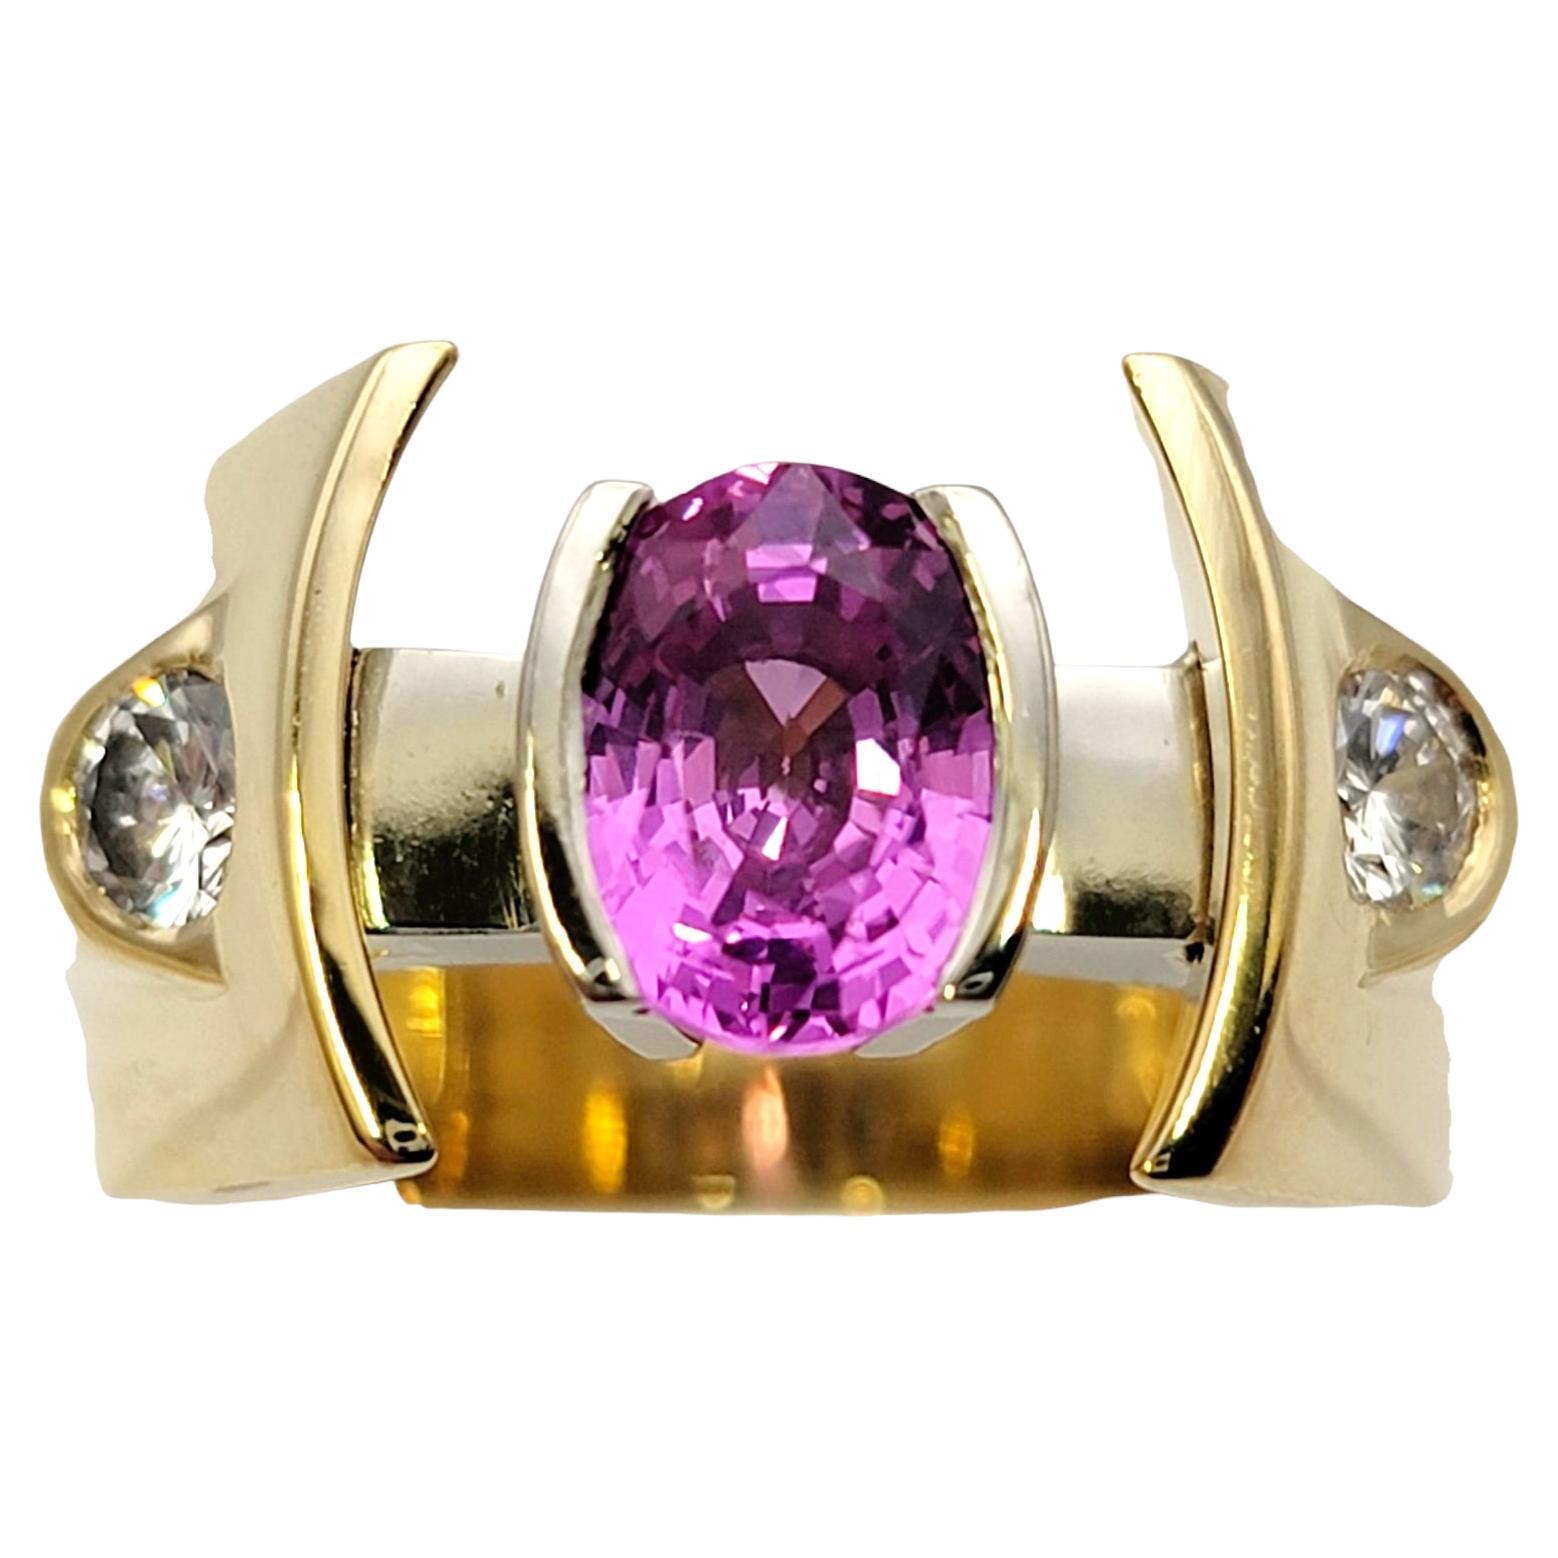 Taille de l'anneau : 9.75

Cette bague ultra contemporaine en saphir rose et diamant offre un look audacieux avec un design unique. Un saphir ovale d'un rose éclatant se trouve au centre de la pièce, à moitié serti dans une lunette en or 18 carats.